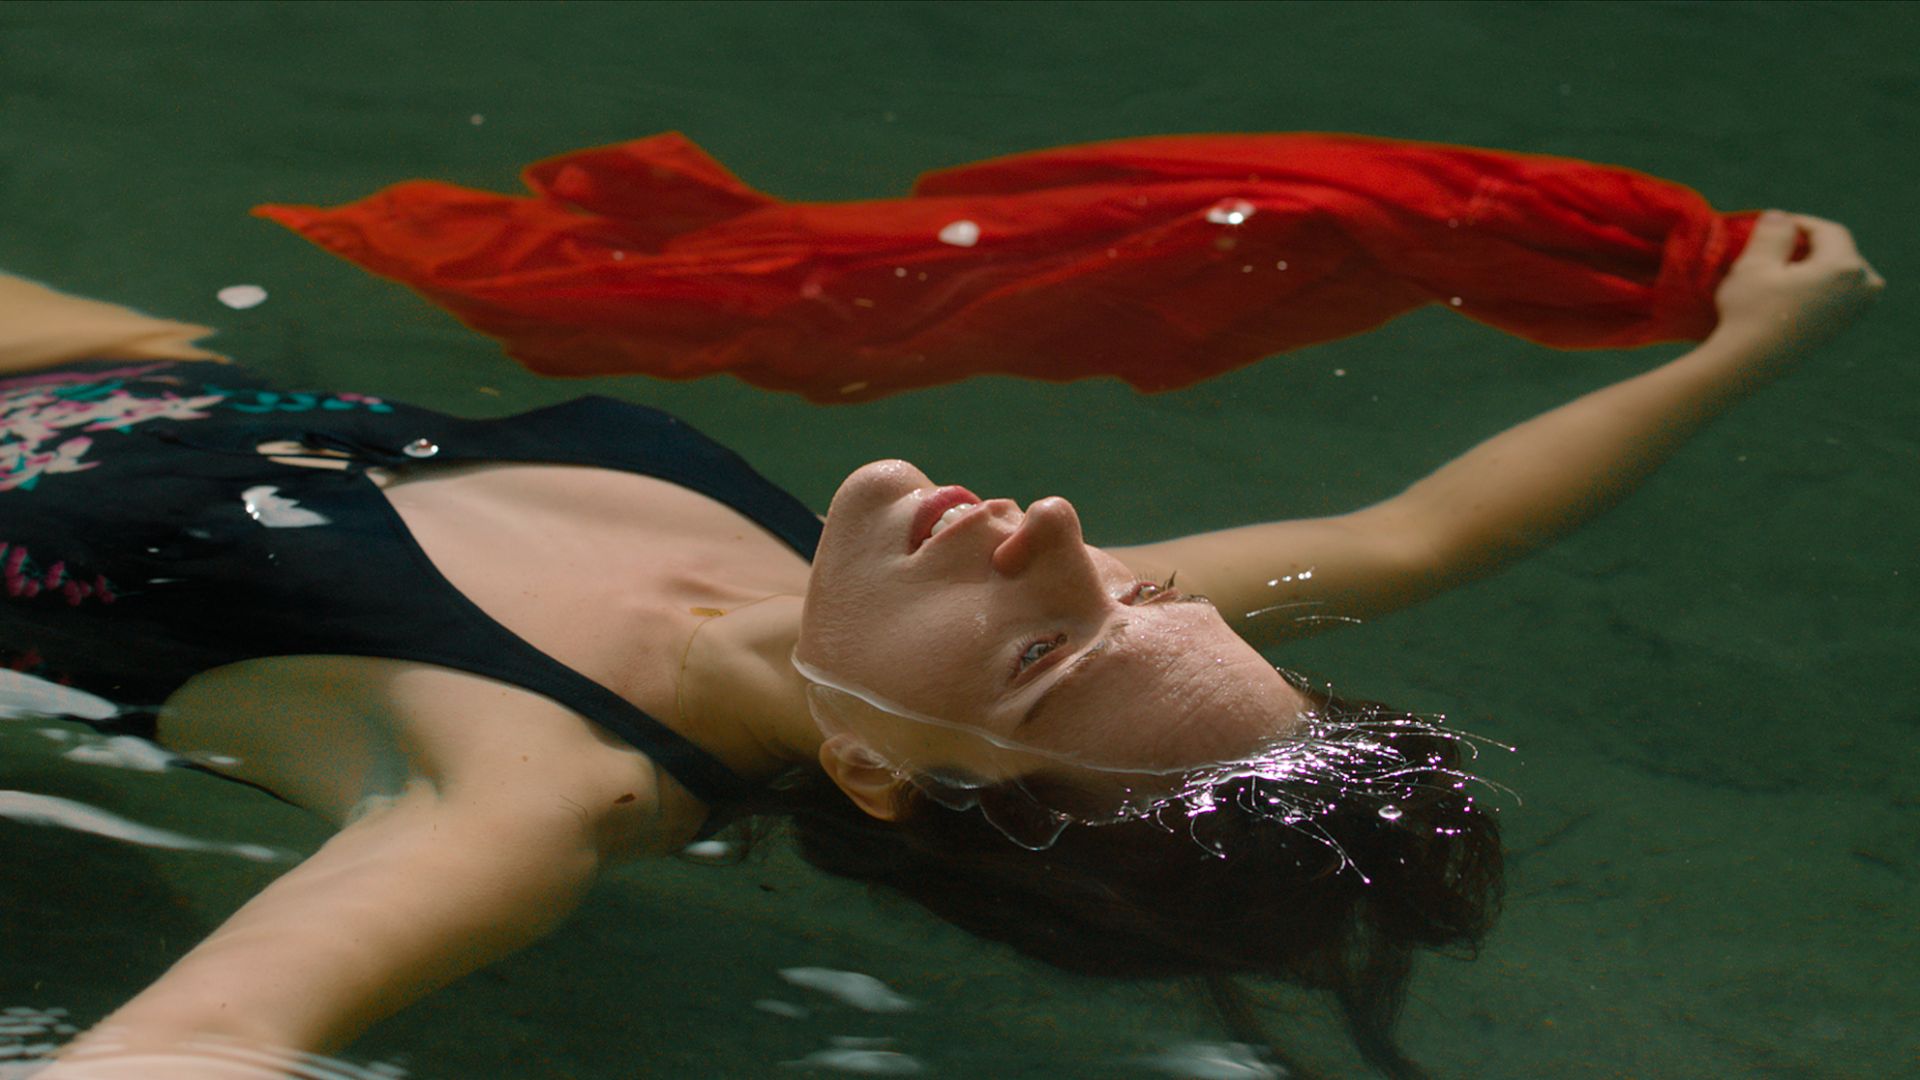 Kobieta w stroju kąpielowym z czerwoną chustą w dłoni, pływająca w basenie